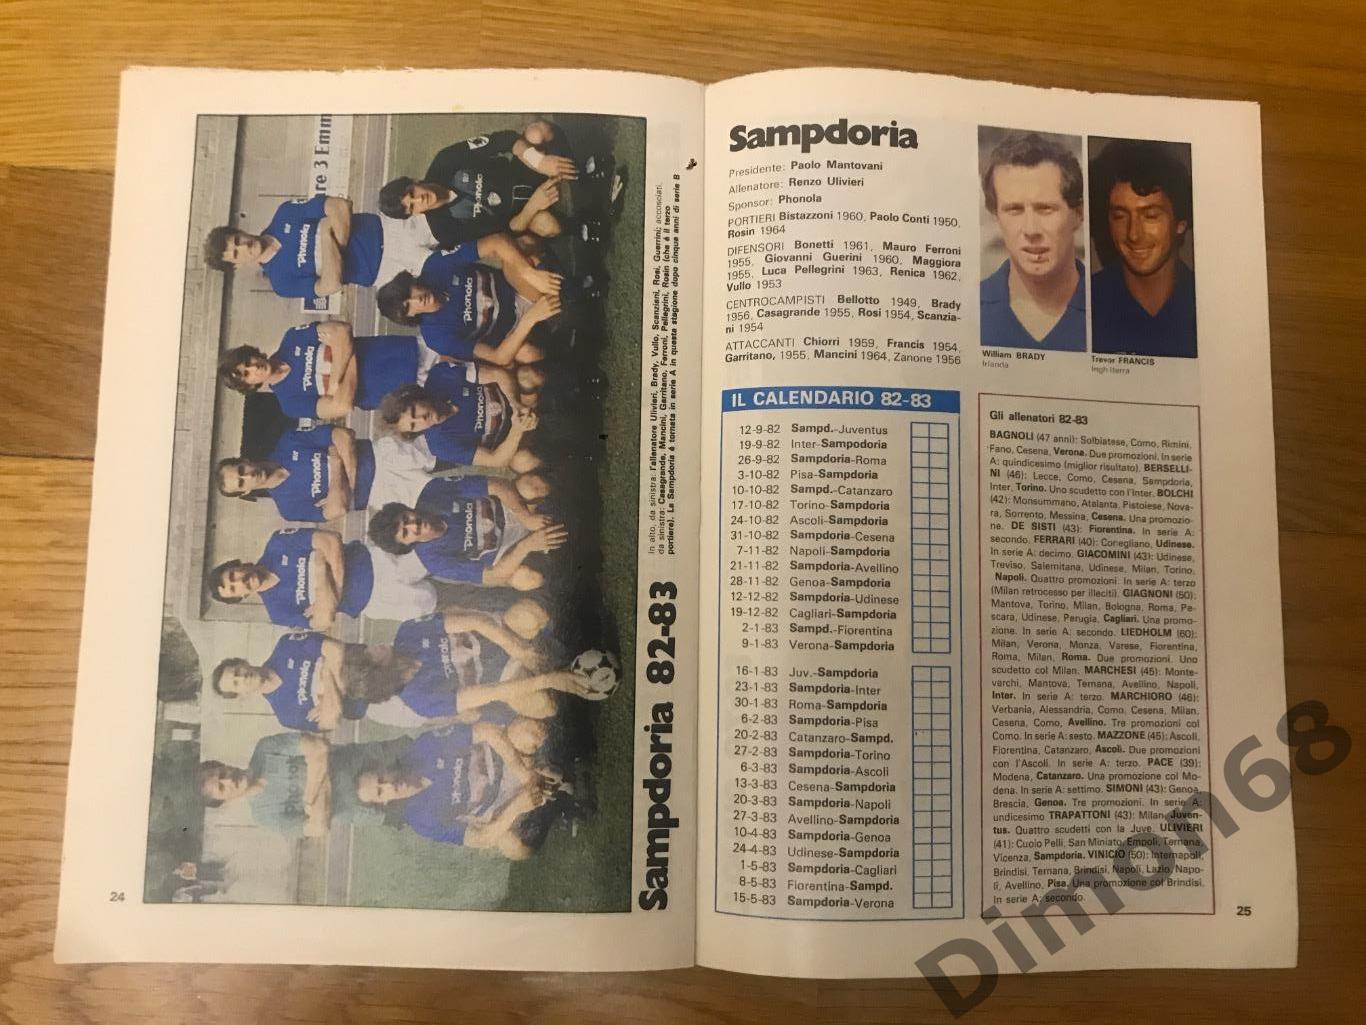 приложение из журнала гуерин спортивно чемпионат италии сезон 1982/83г 5